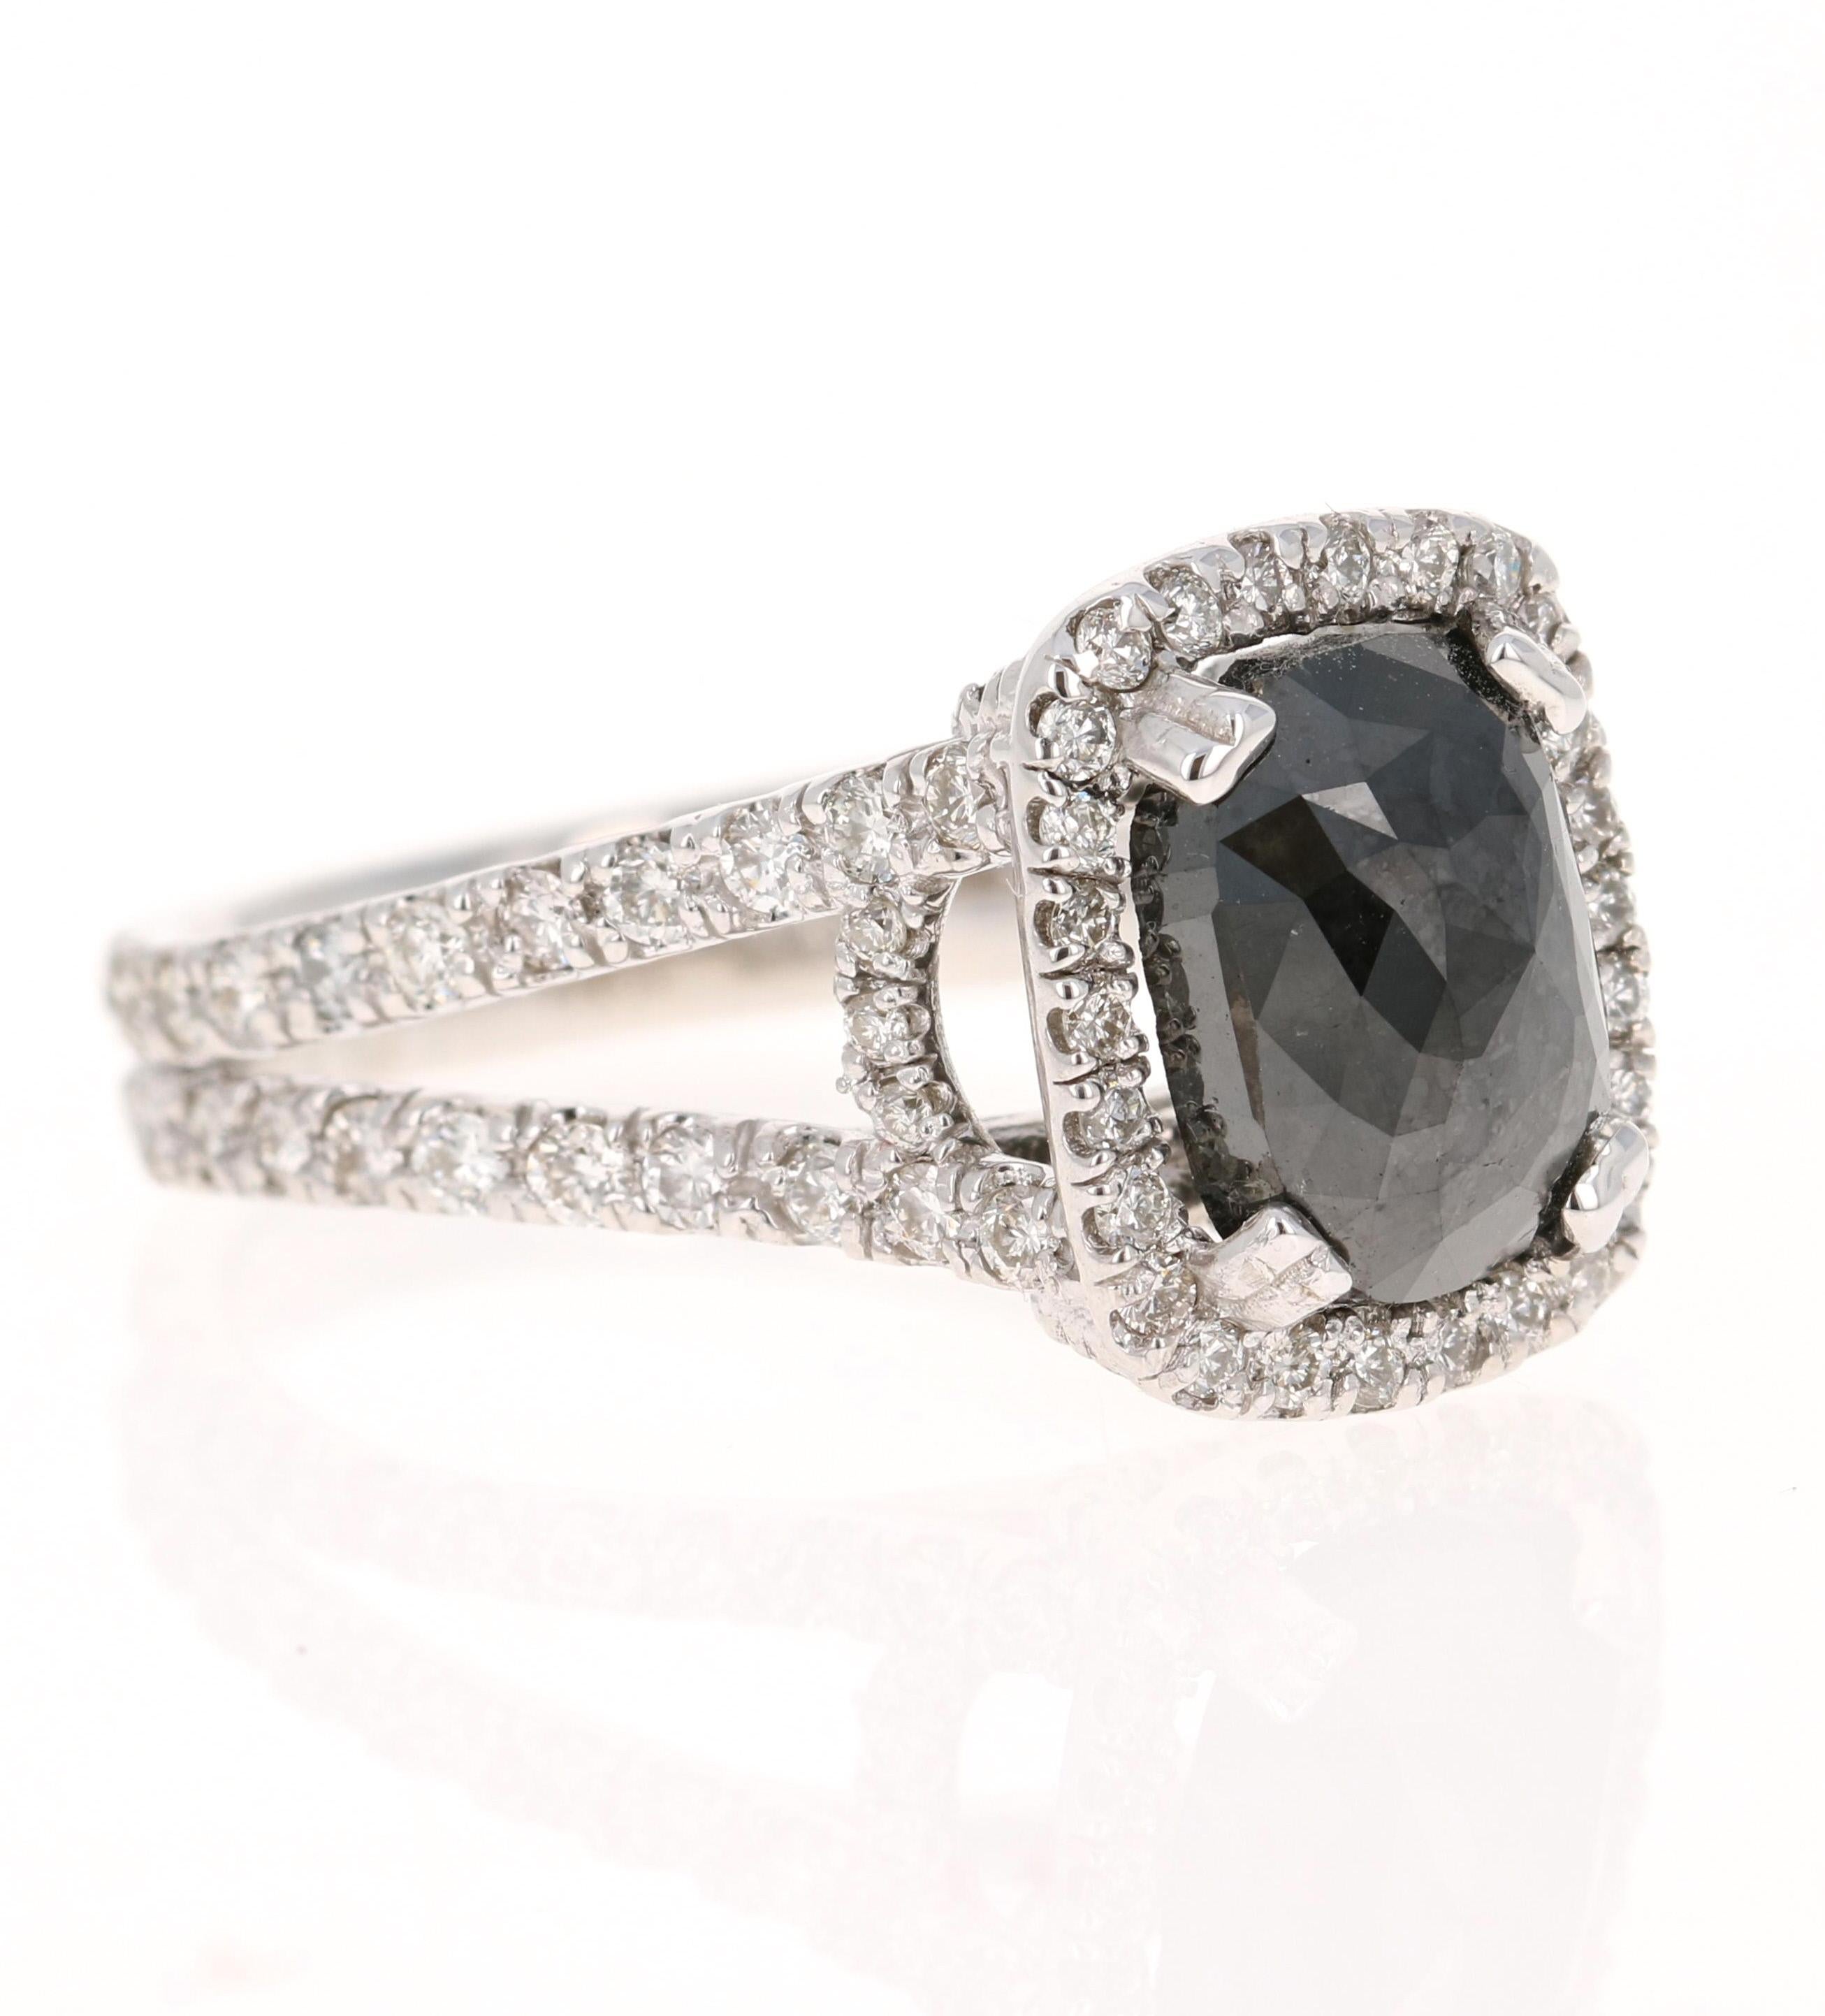 Der rechteckige schwarze Diamant im Kissenschliff hat 3,84 Karat und ist von 88 Diamanten im Rundschliff mit einem Gewicht von 1,35 Karat umgeben. (Reinheit: VS, Farbe: H) Das Gesamtkaratgewicht des Rings beträgt 5,19 Karat. 

Er ist wunderschön in